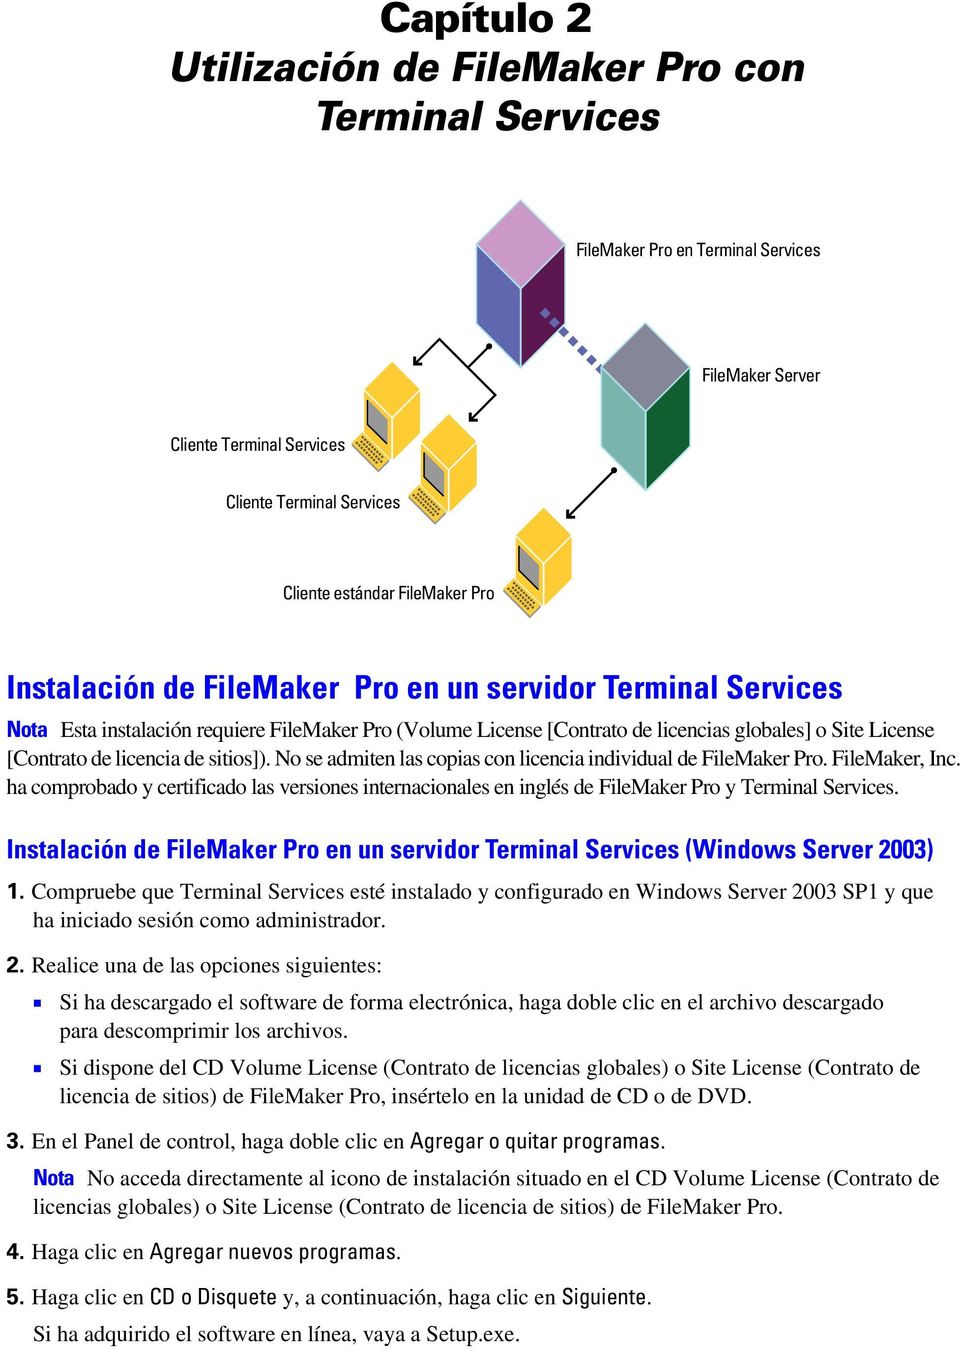 sitios]). No se admiten las copias con licencia individual de FileMaker Pro. FileMaker, Inc. ha comprobado y certificado las versiones internacionales en inglés de FileMaker Pro y Terminal Services.